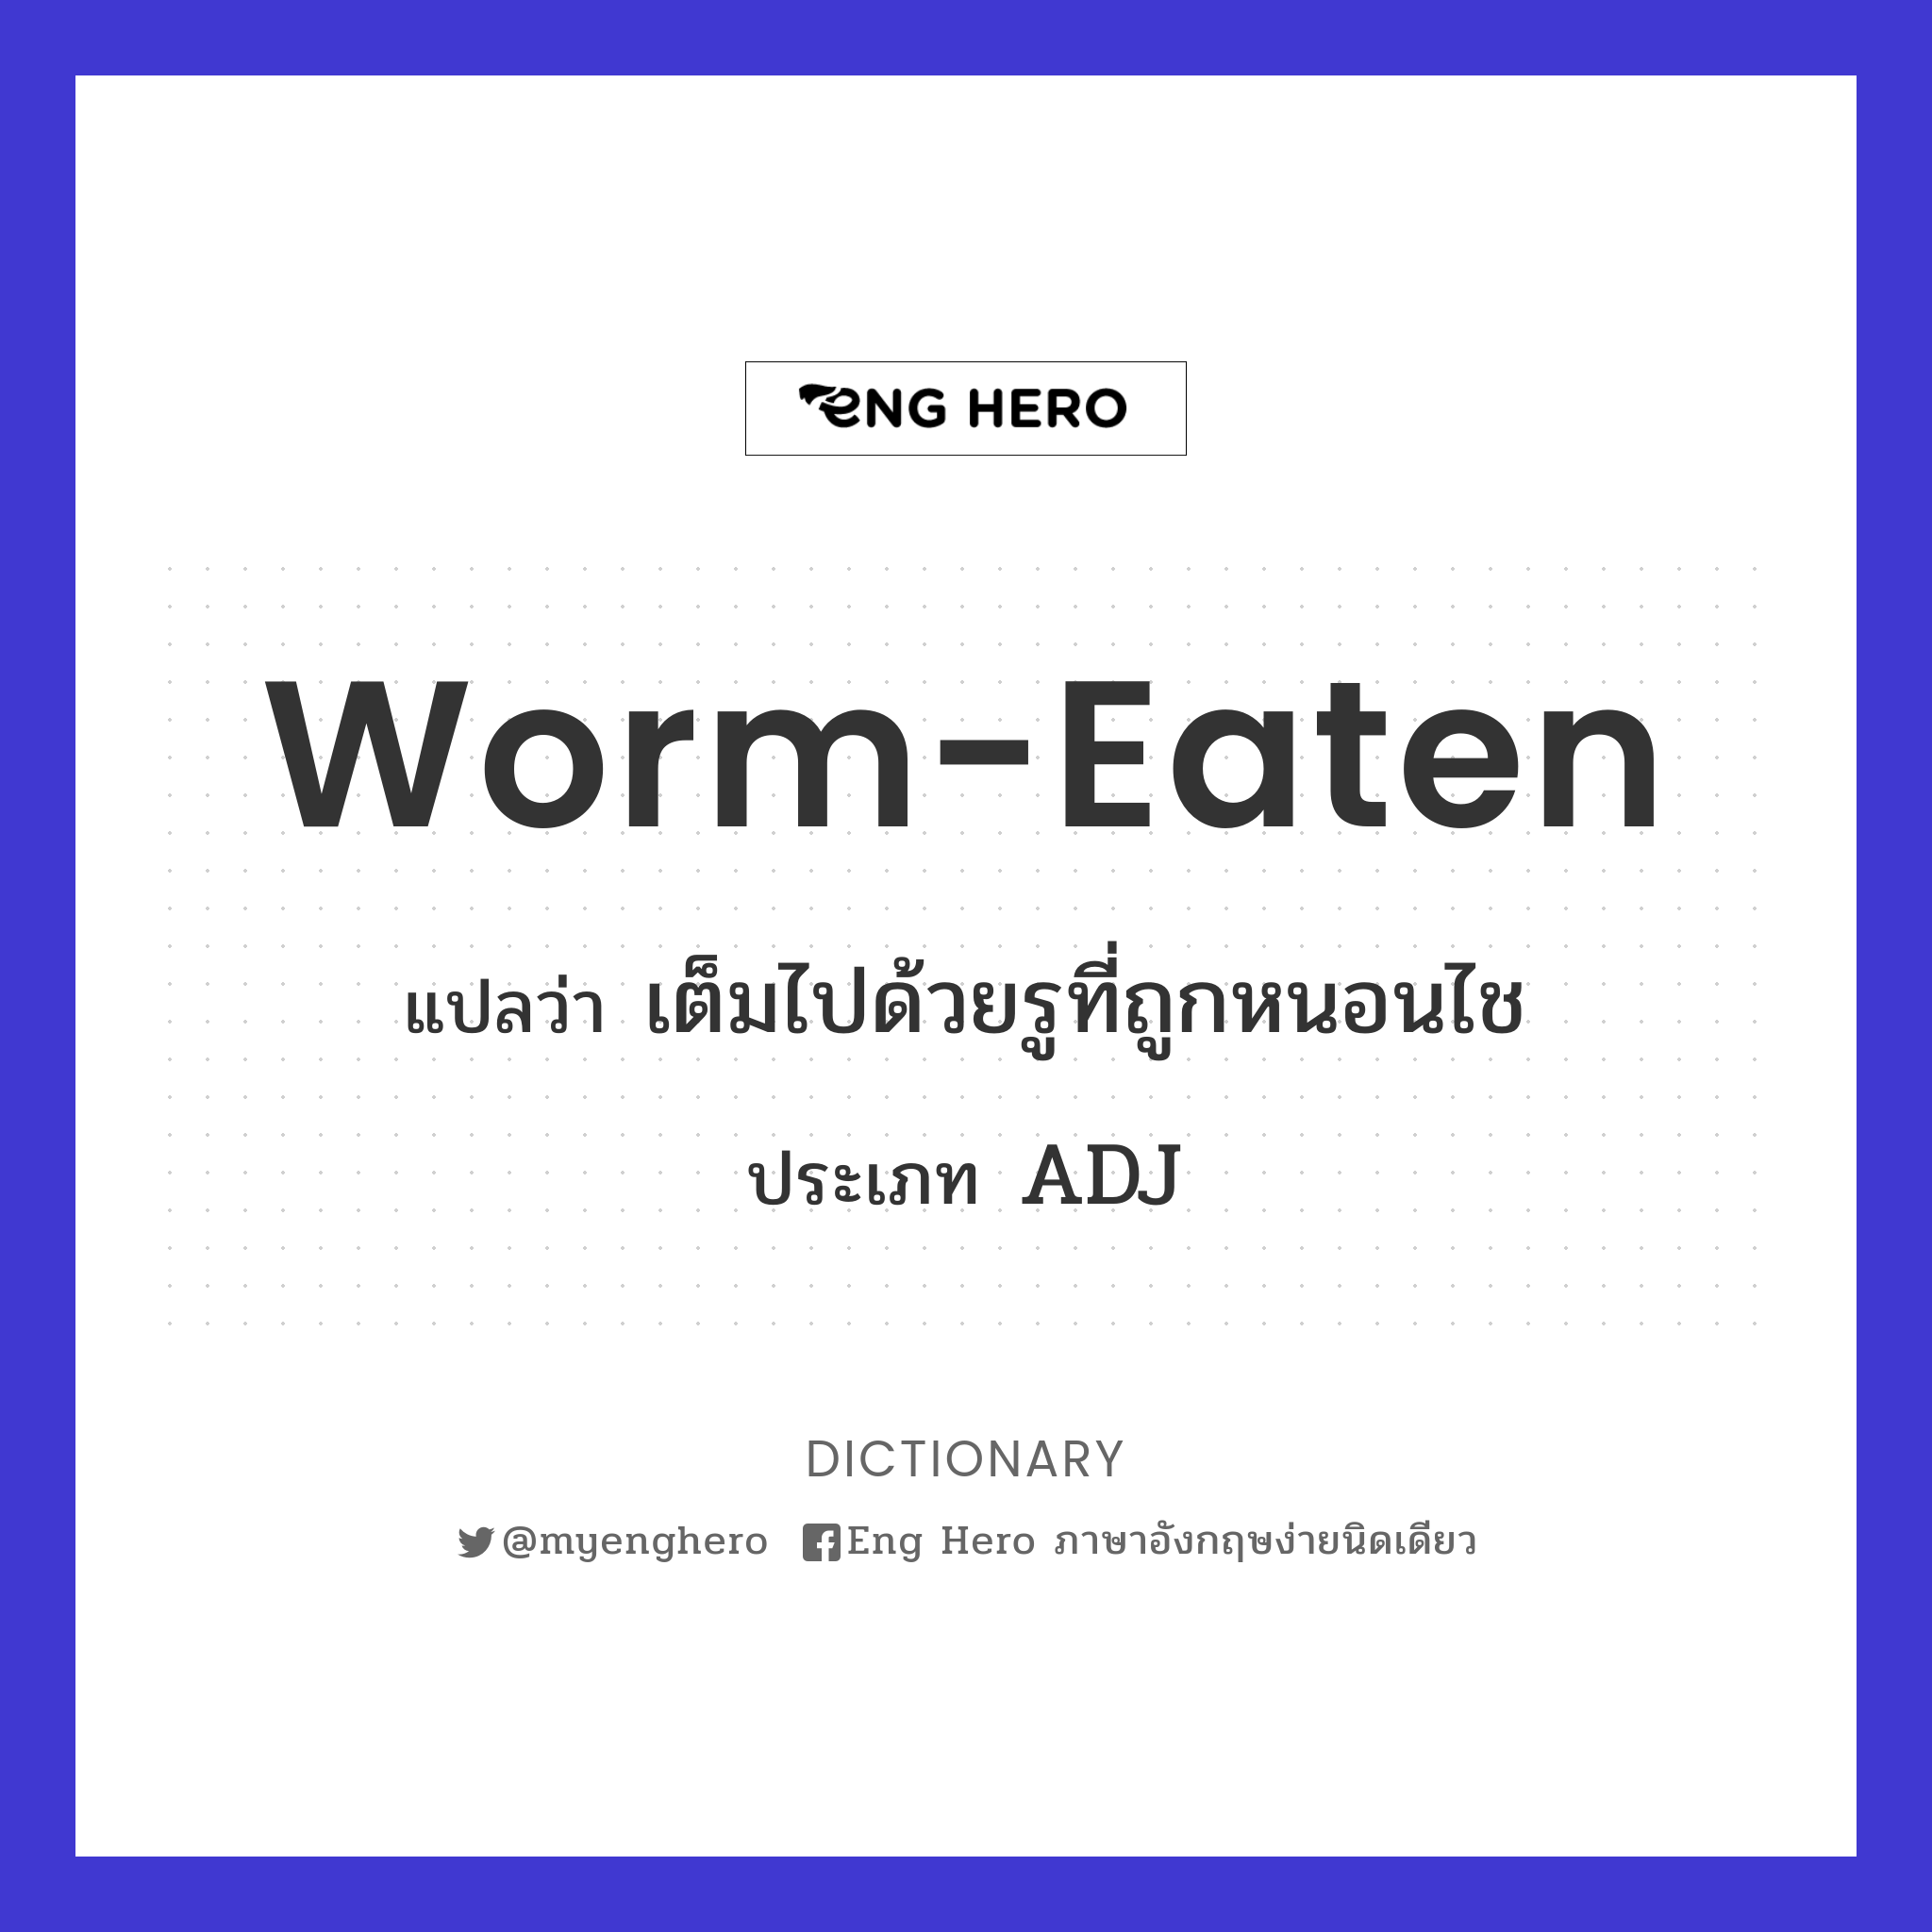 worm-eaten